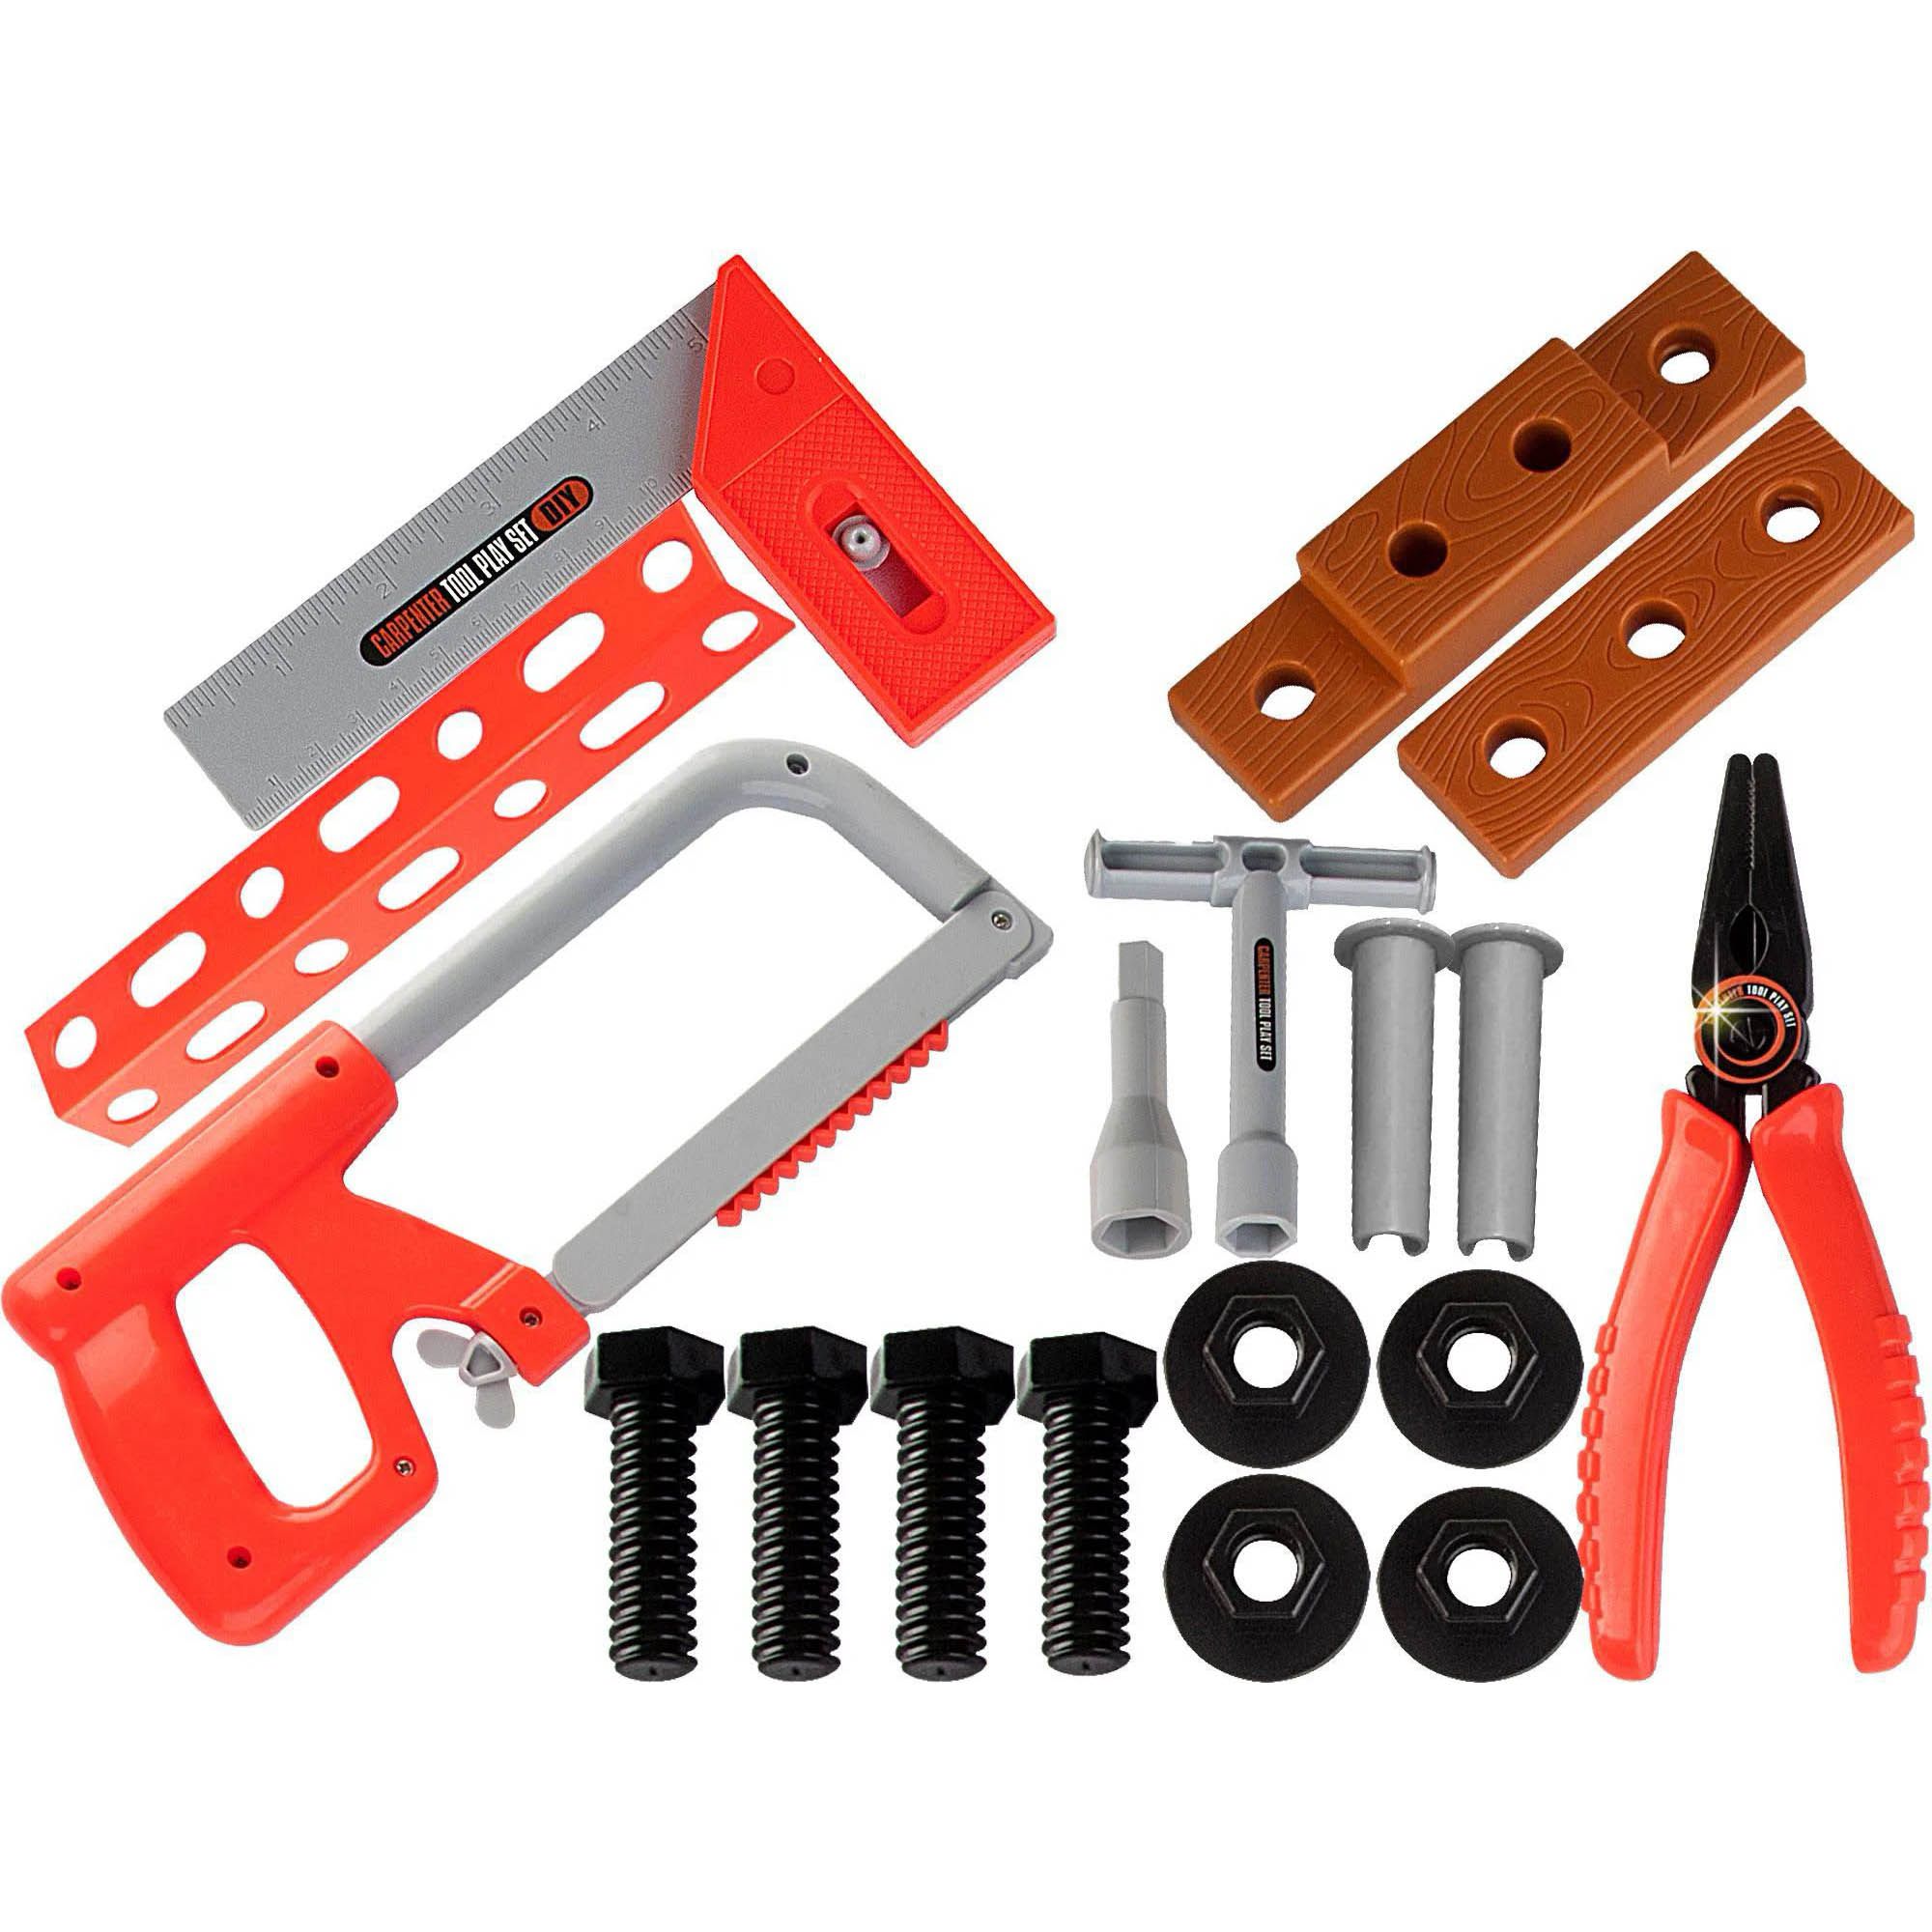 Kit de Ferramentas - Equipe de Construção - Zoop Toys